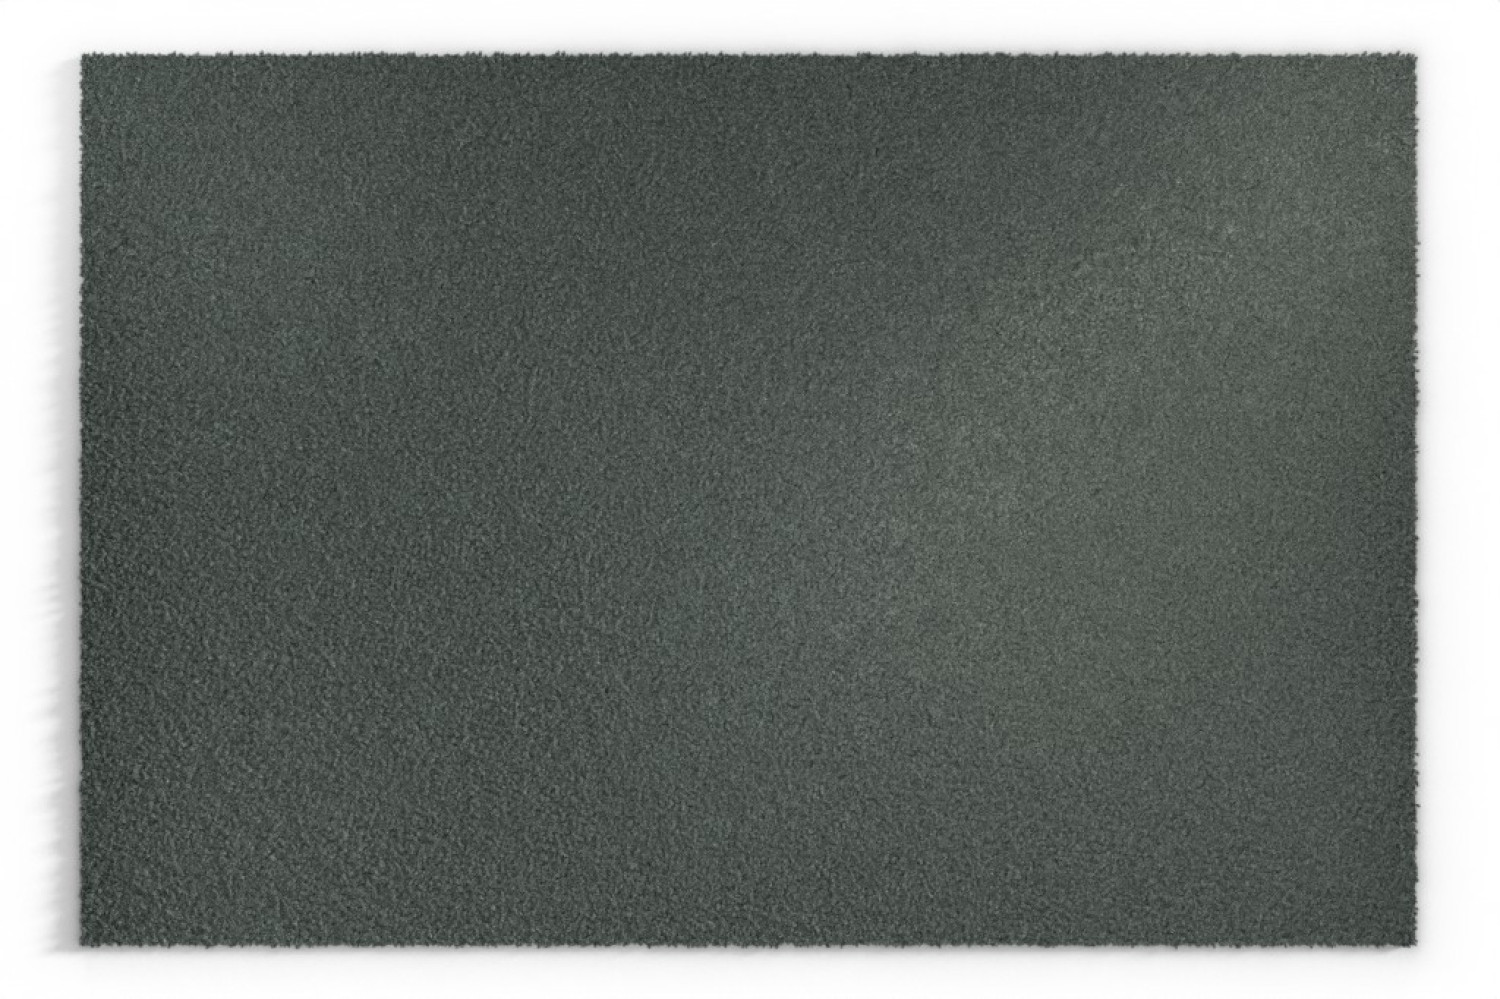 ENTRADA Kokosmatte grau 014 200 cm